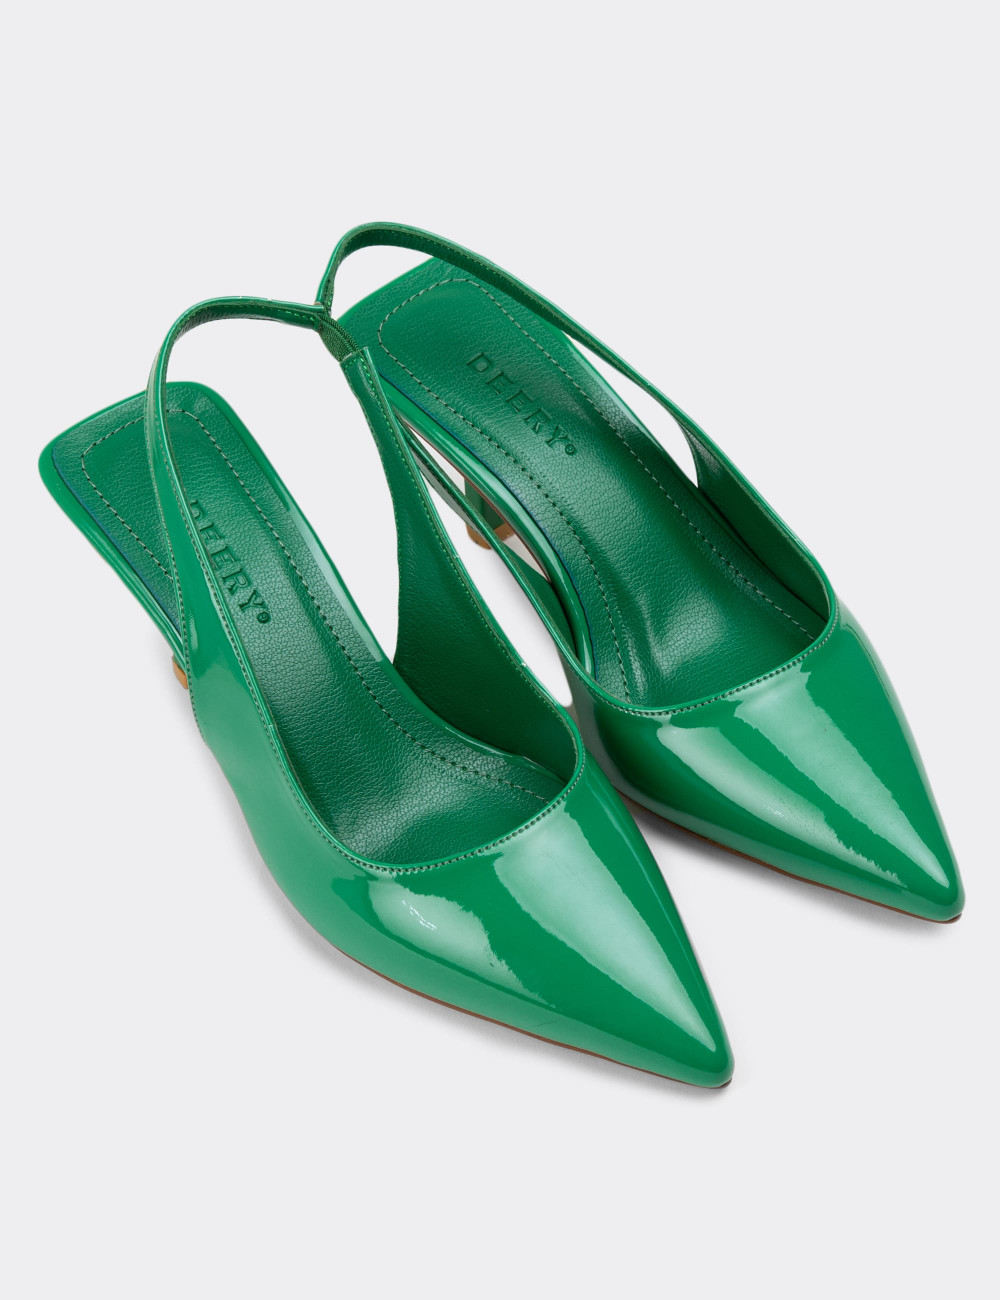 Rugan Yeşil Topuklu Kadın Ayakkabı - K0601ZYSLM01